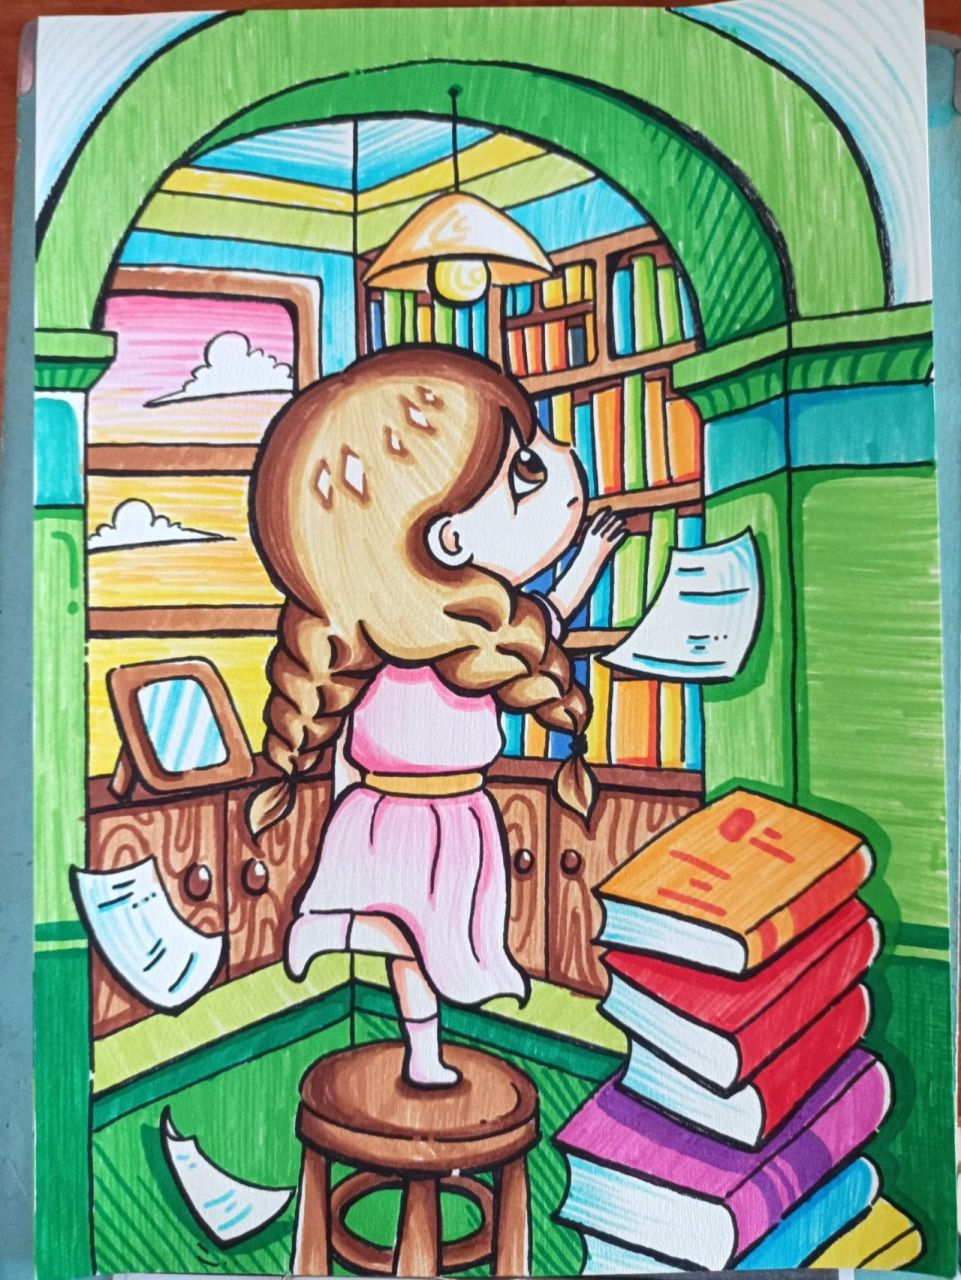 《图书馆》创意主题儿童画(含过程) 这也是库存哦,之前暑假画的 用的